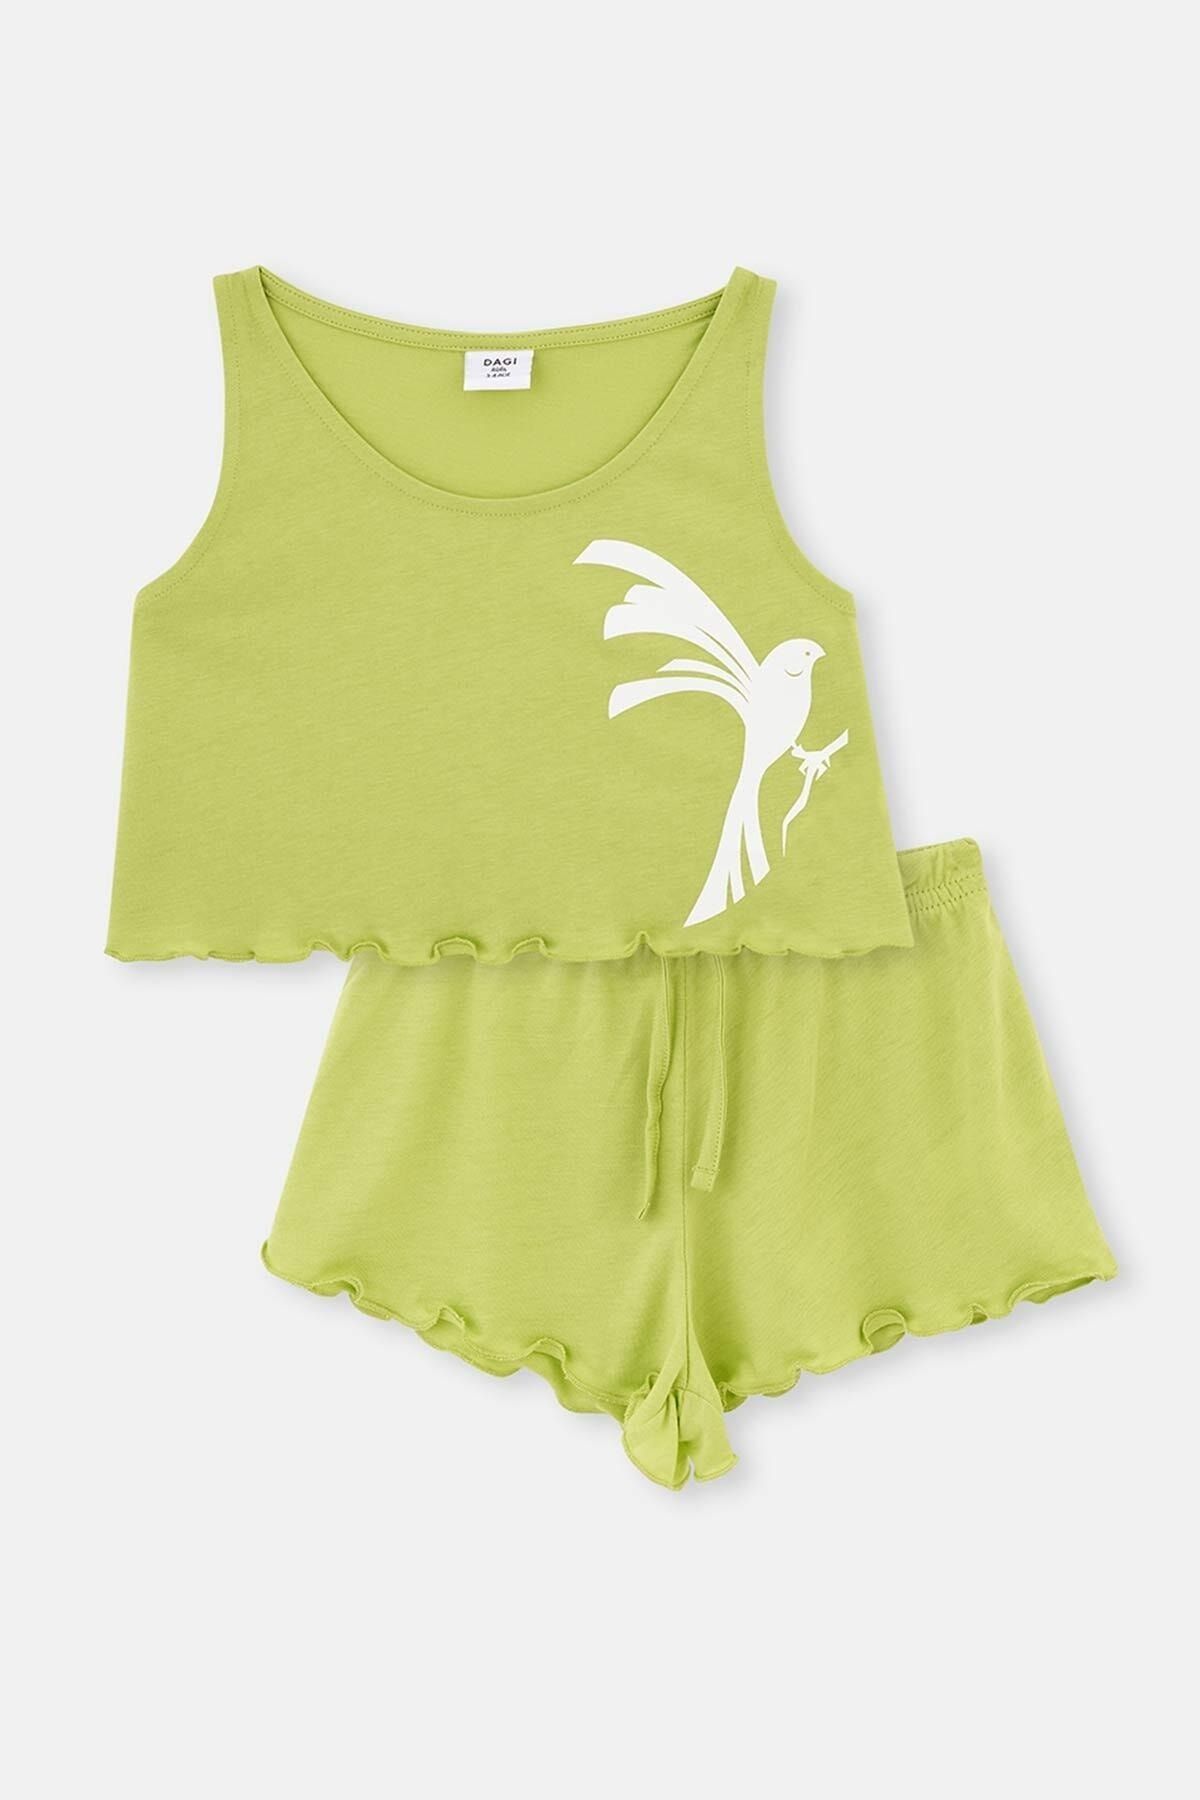 Dagi Yeşil Kuş Desenli Örme Atlet Şort Pijama Takımı